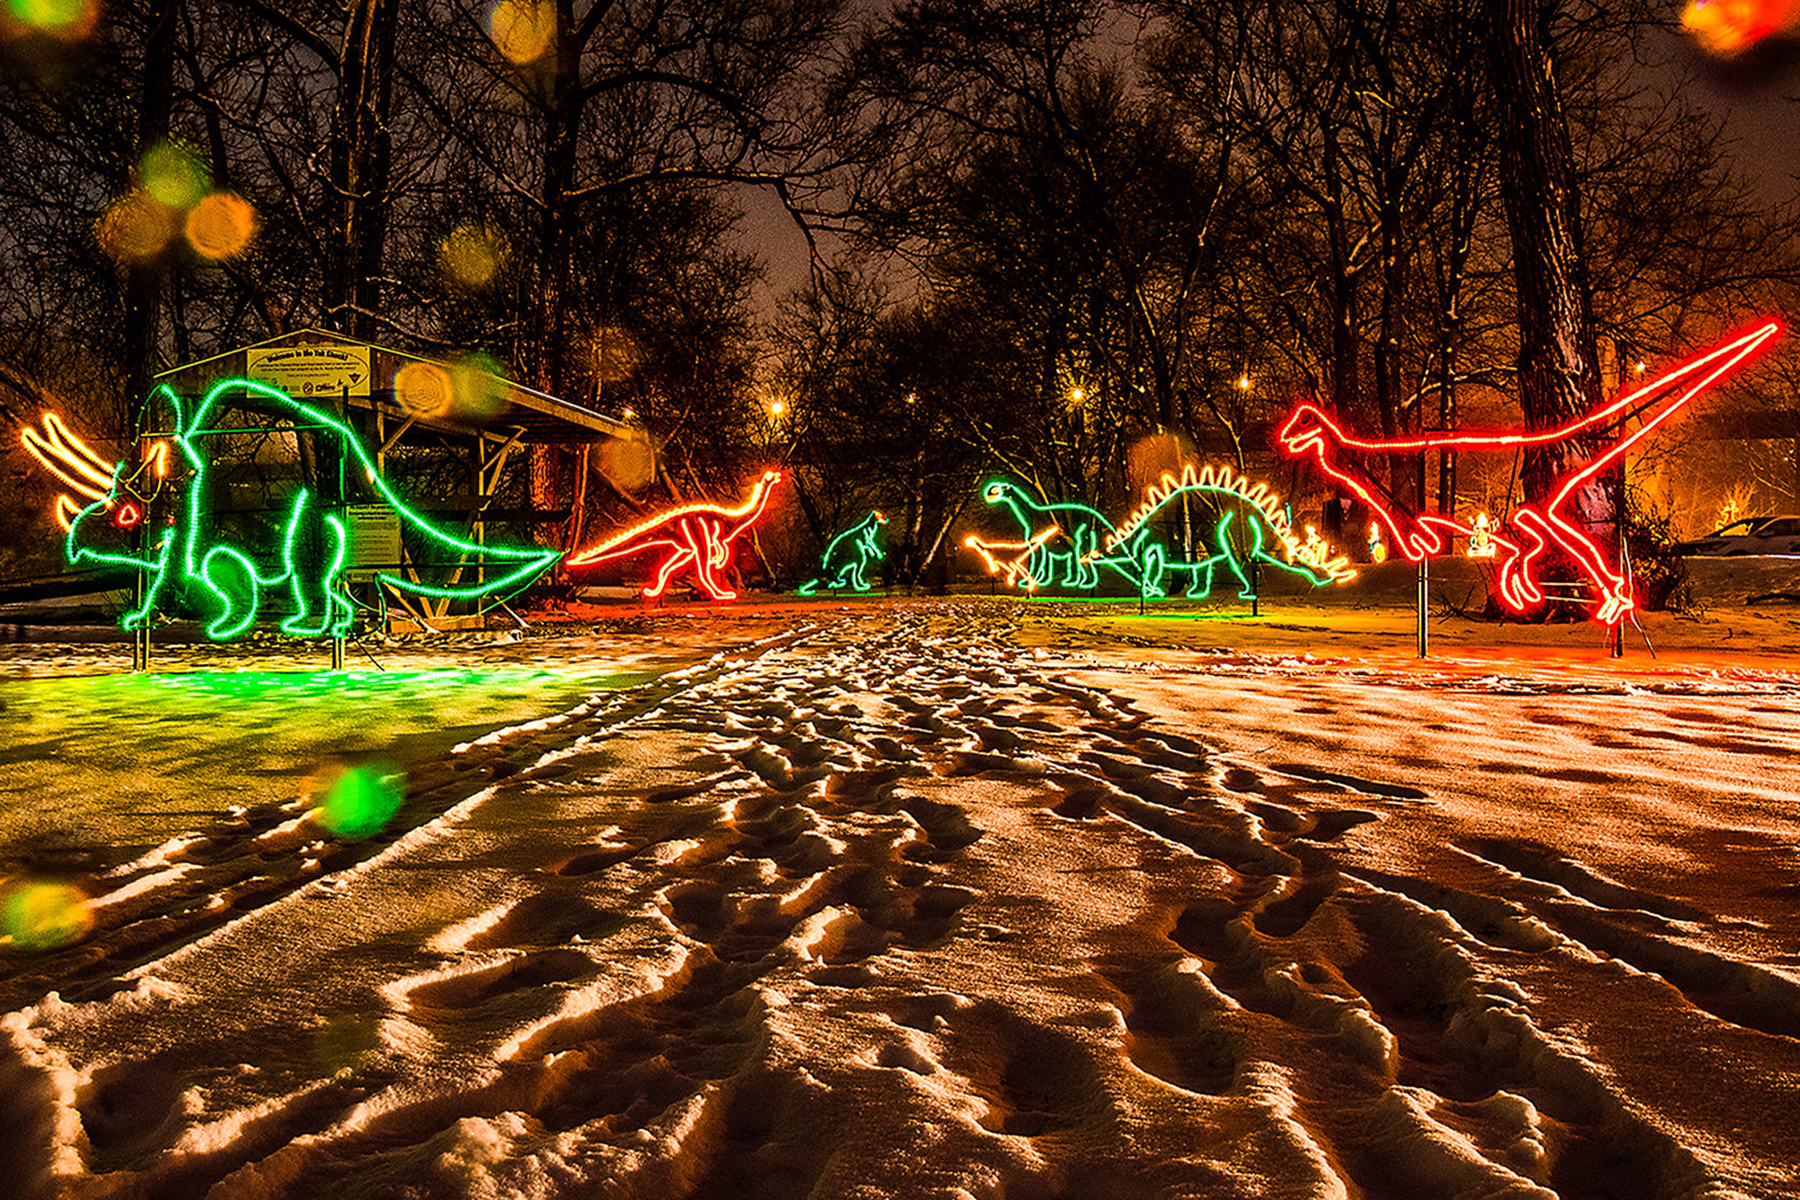 Dinosaur lights in park during winter